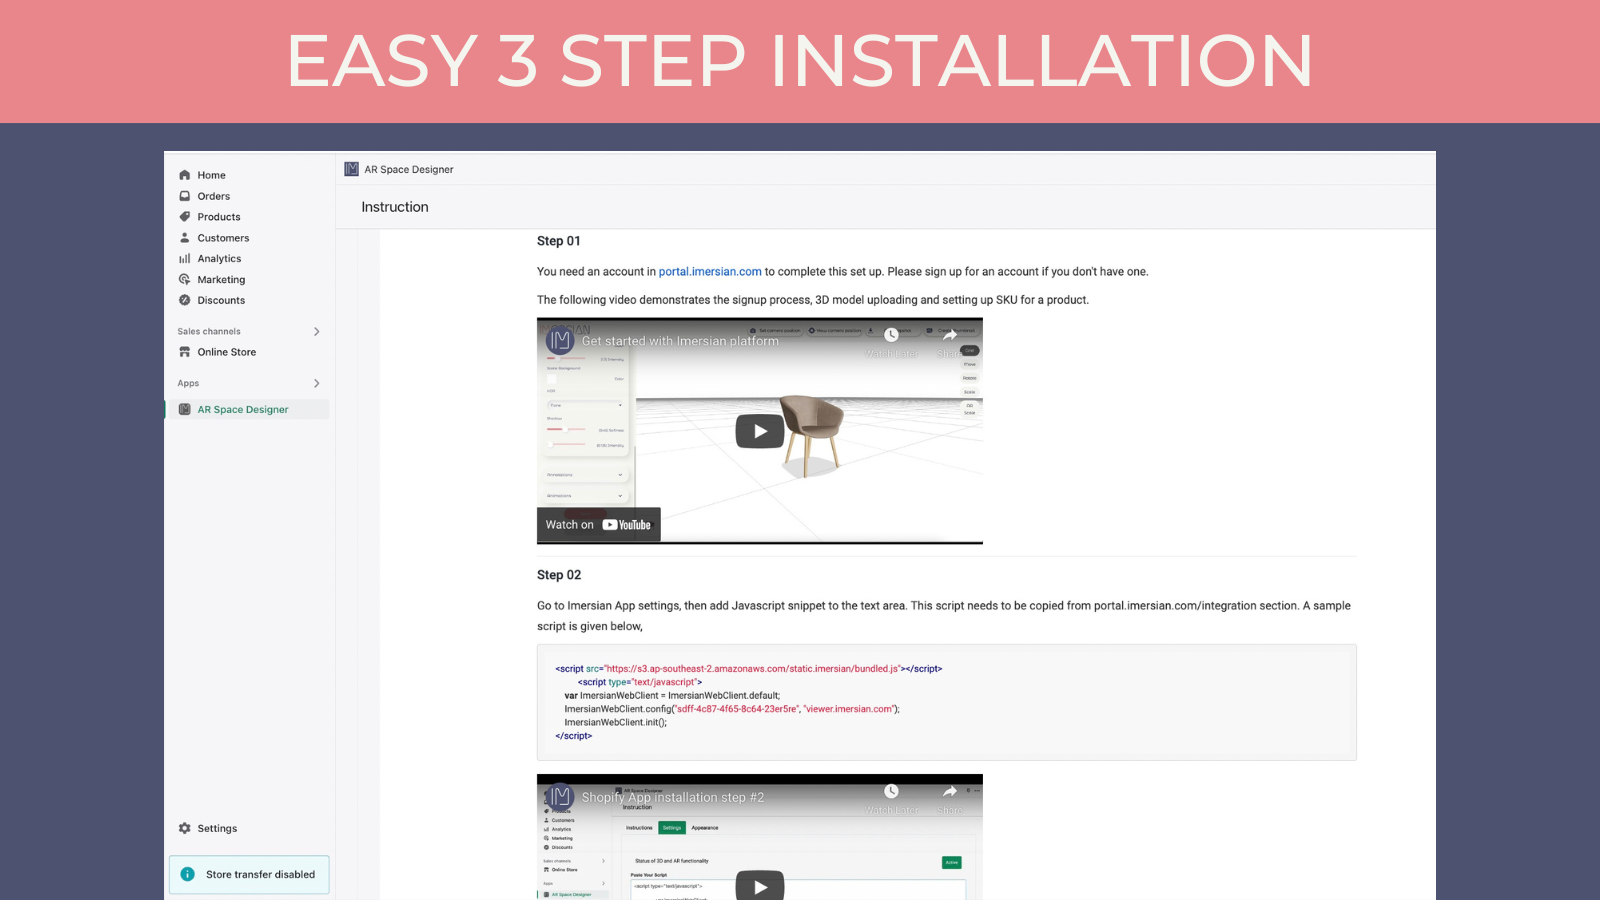 Instalação do aplicativo em 3 passos fáceis